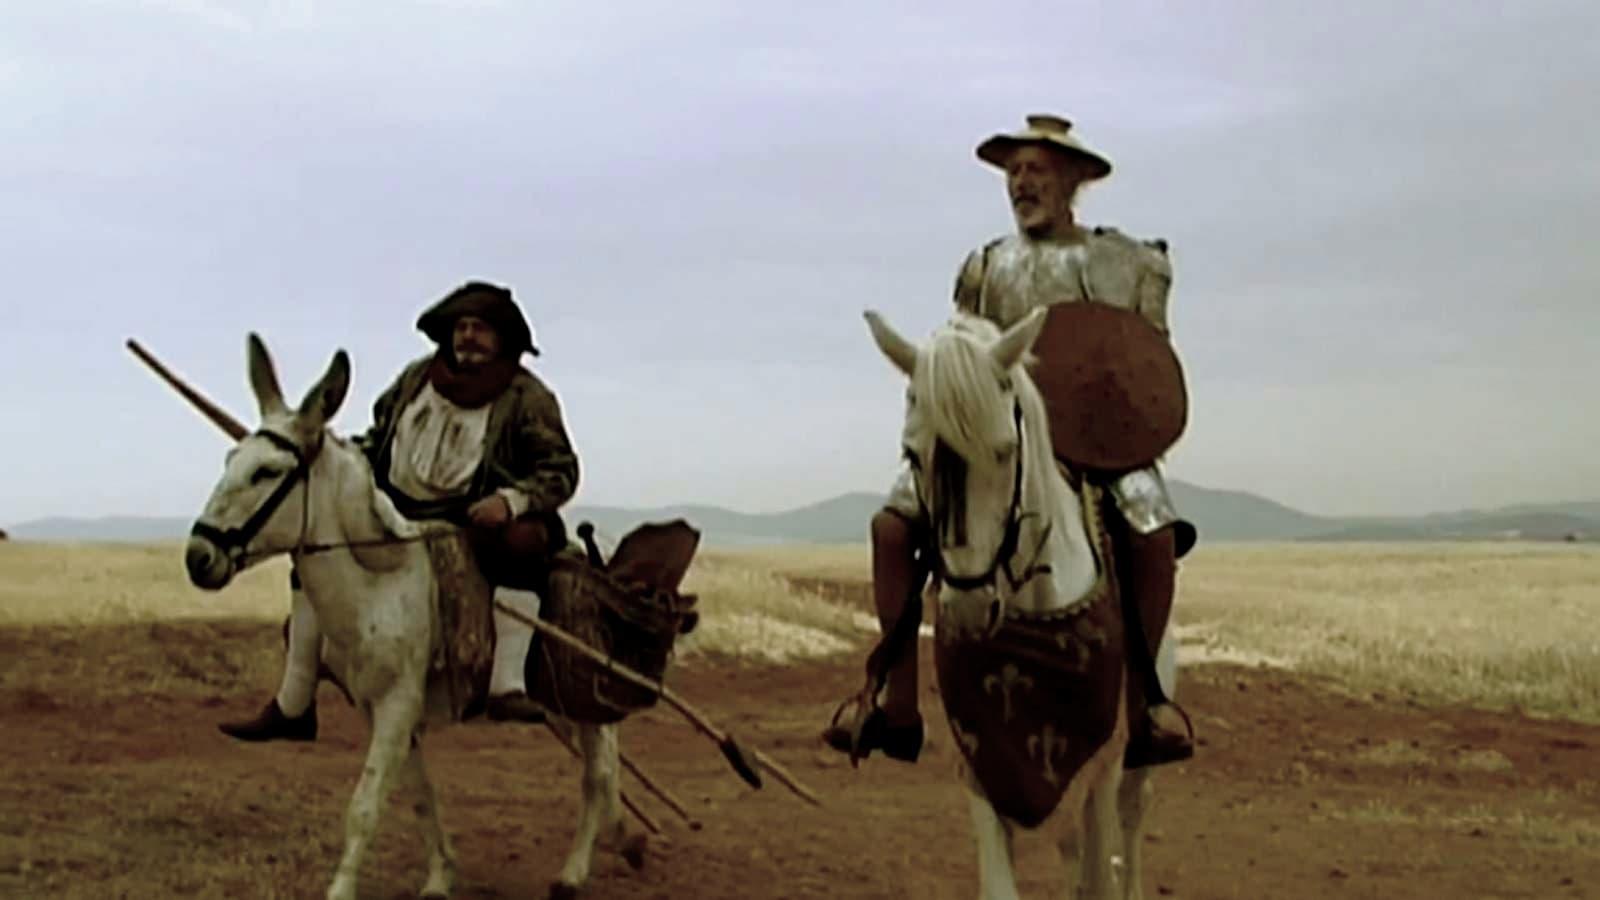 Las locuras de don Quijote backdrop